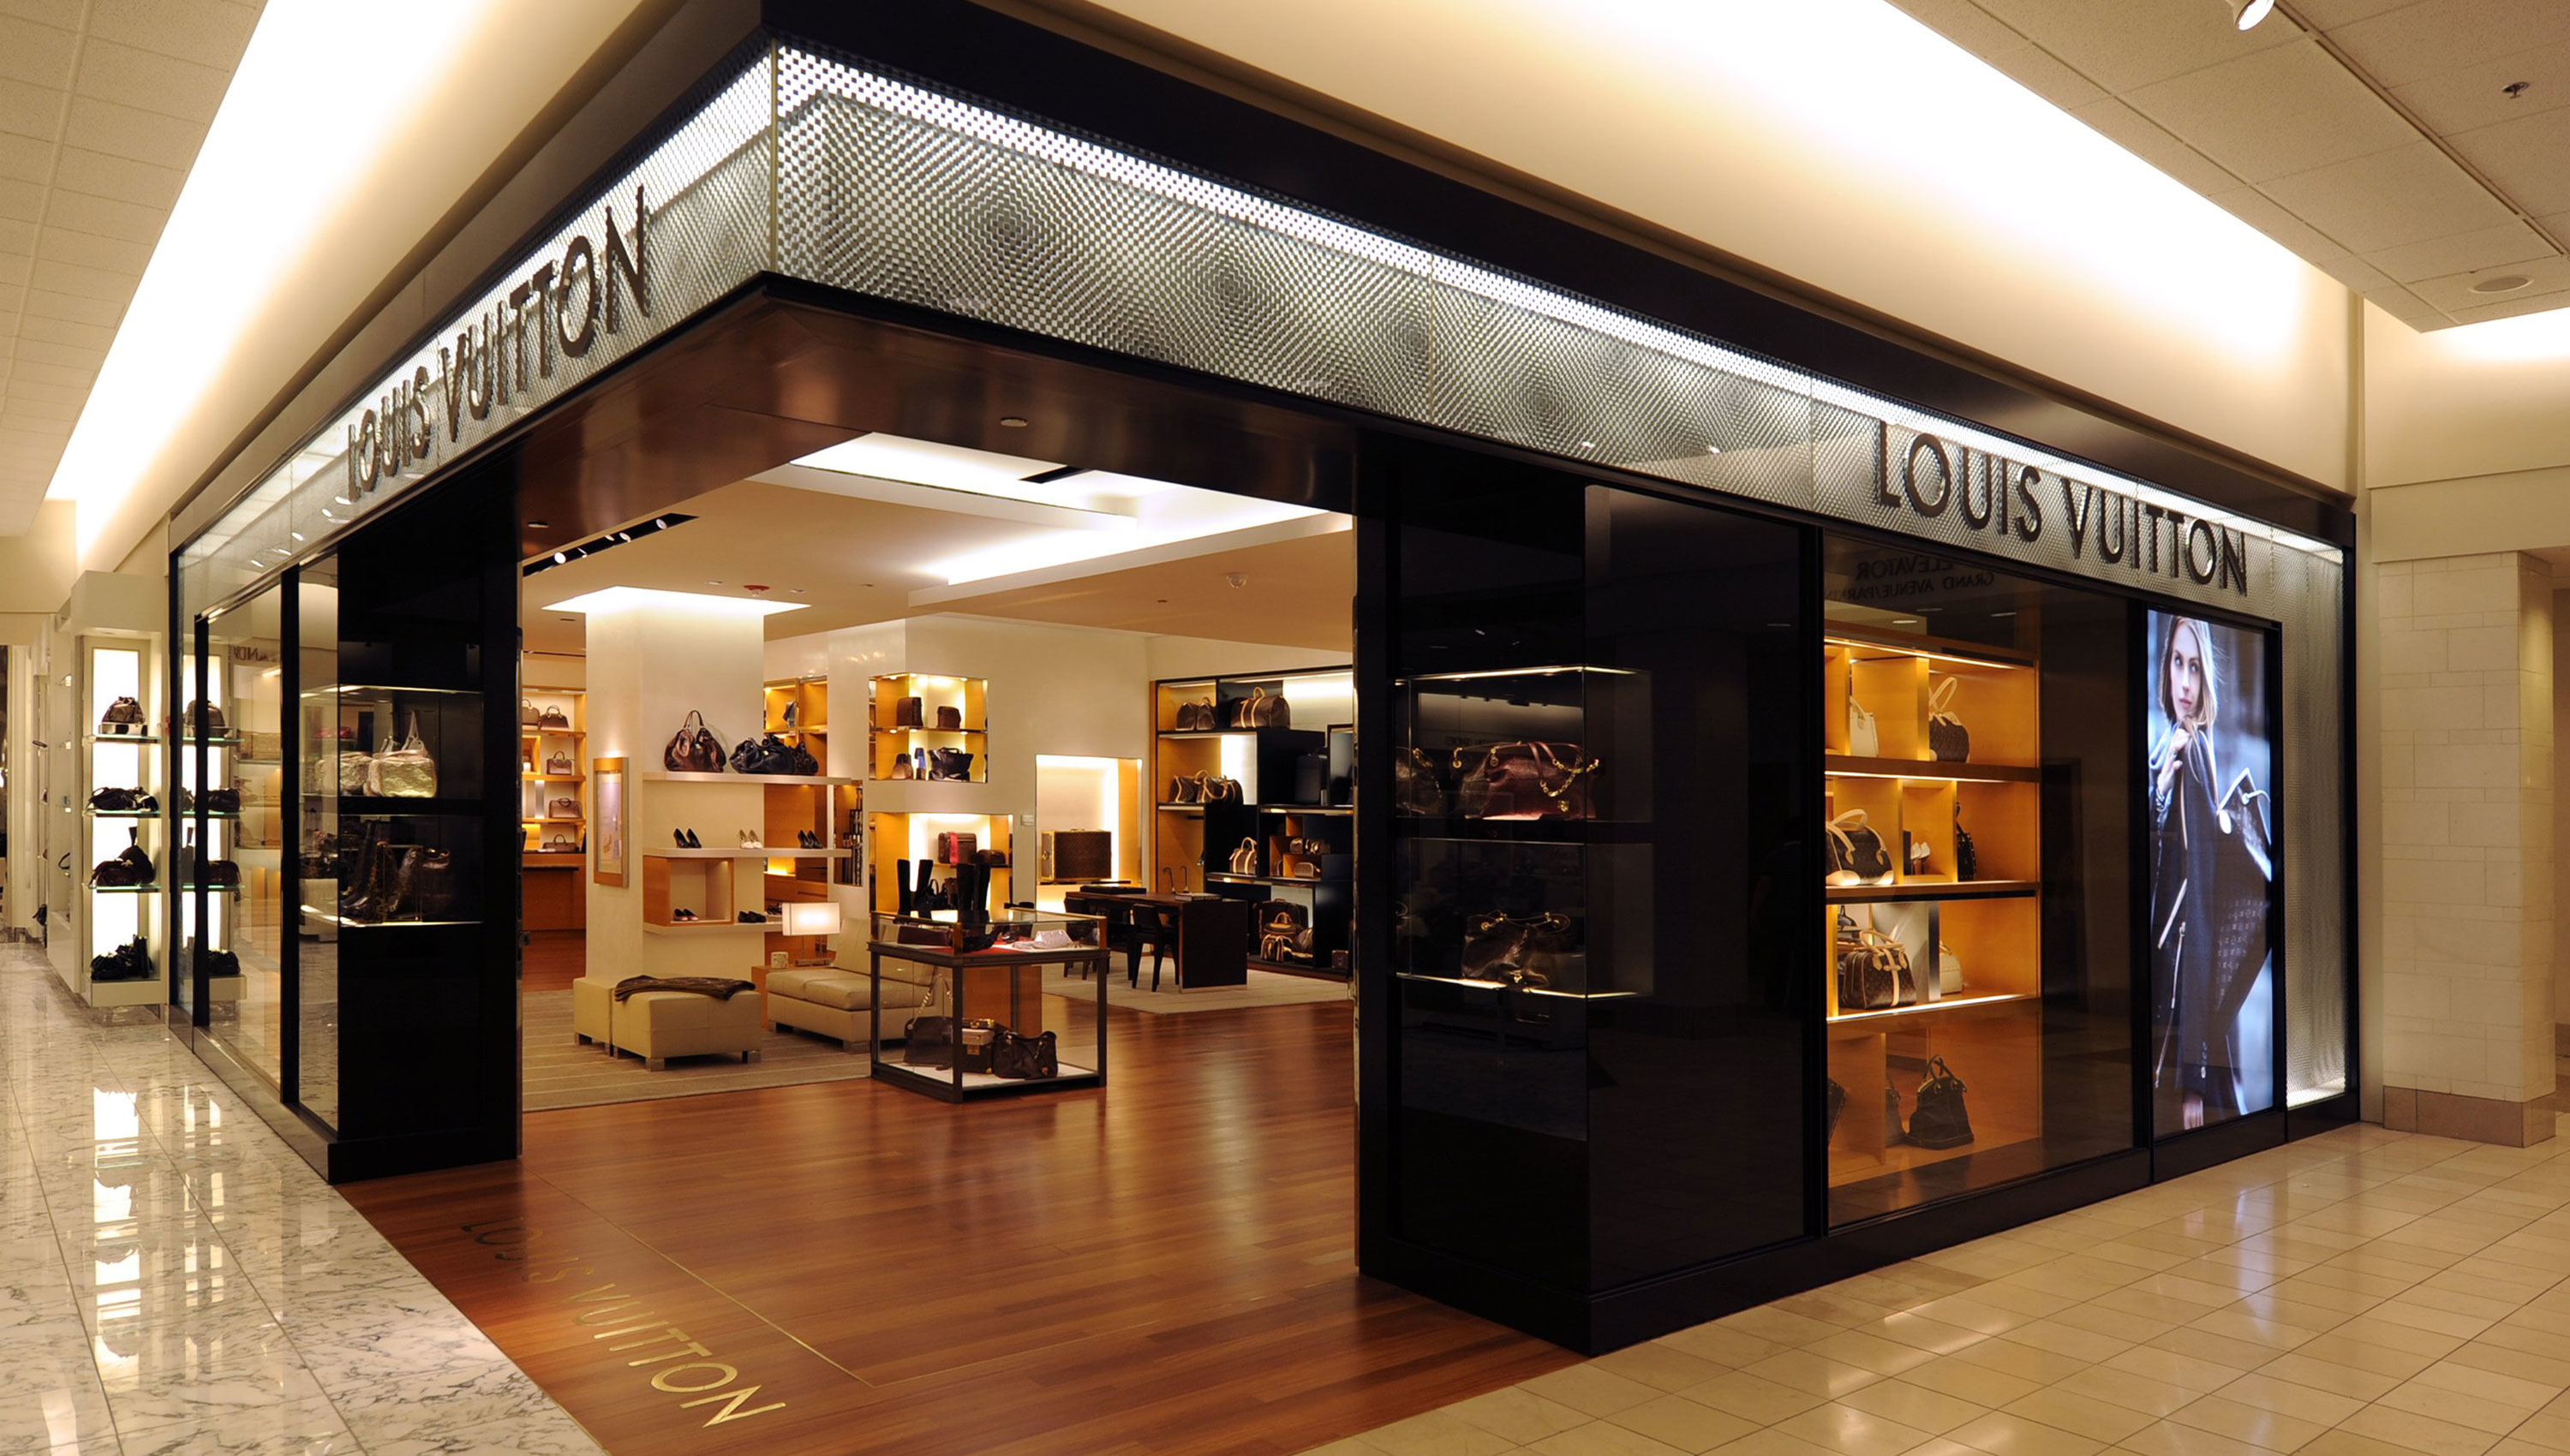 Louis Vuitton Nordstrom Chicago, Chicago Illinois (IL) - www.waldenwongart.com